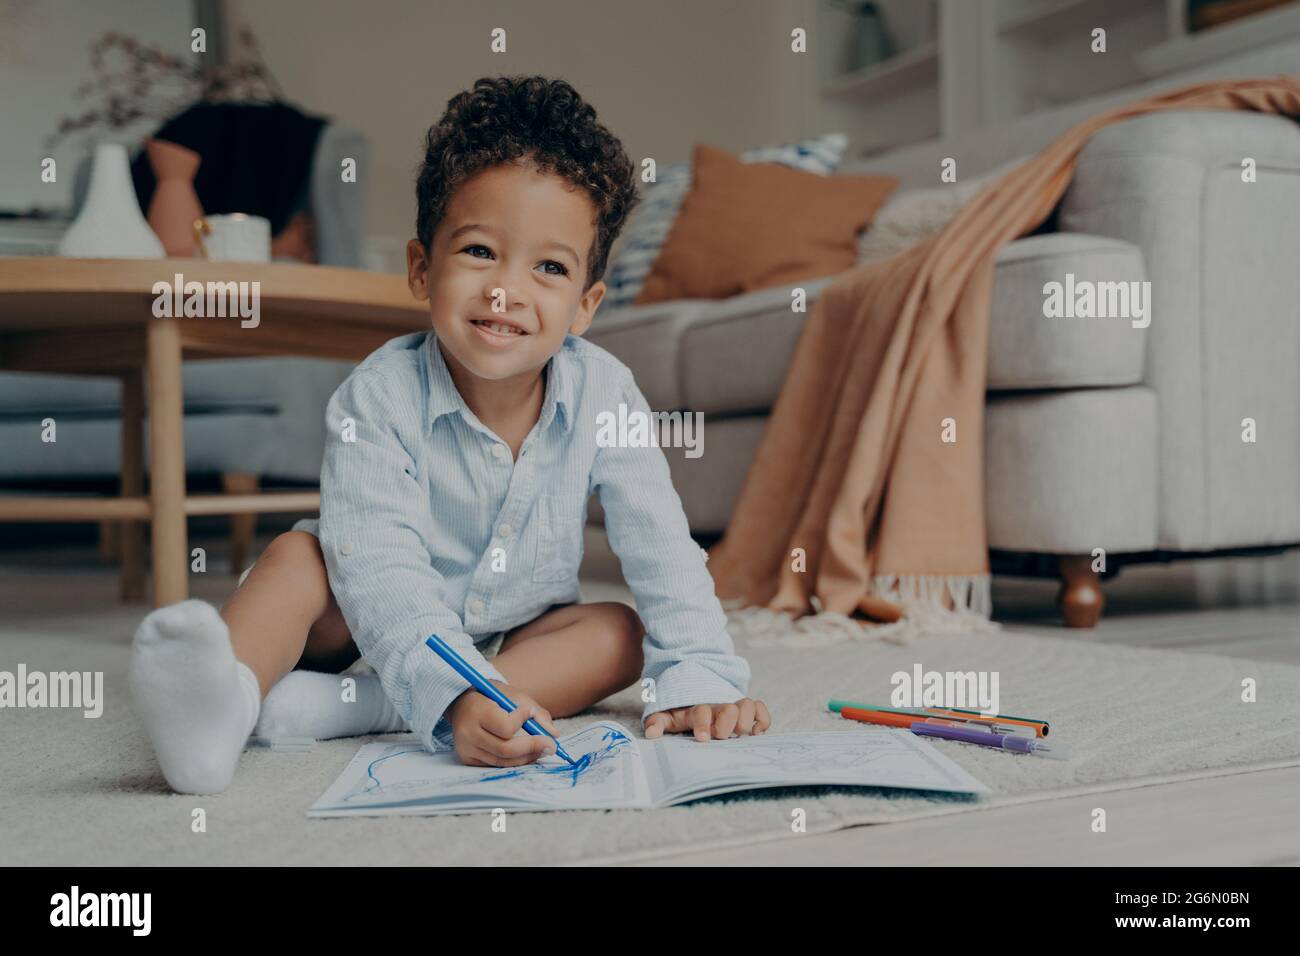 Piccolo ragazzo afro seduto sul pavimento e disegnando con colorati pennarelli punta Foto Stock